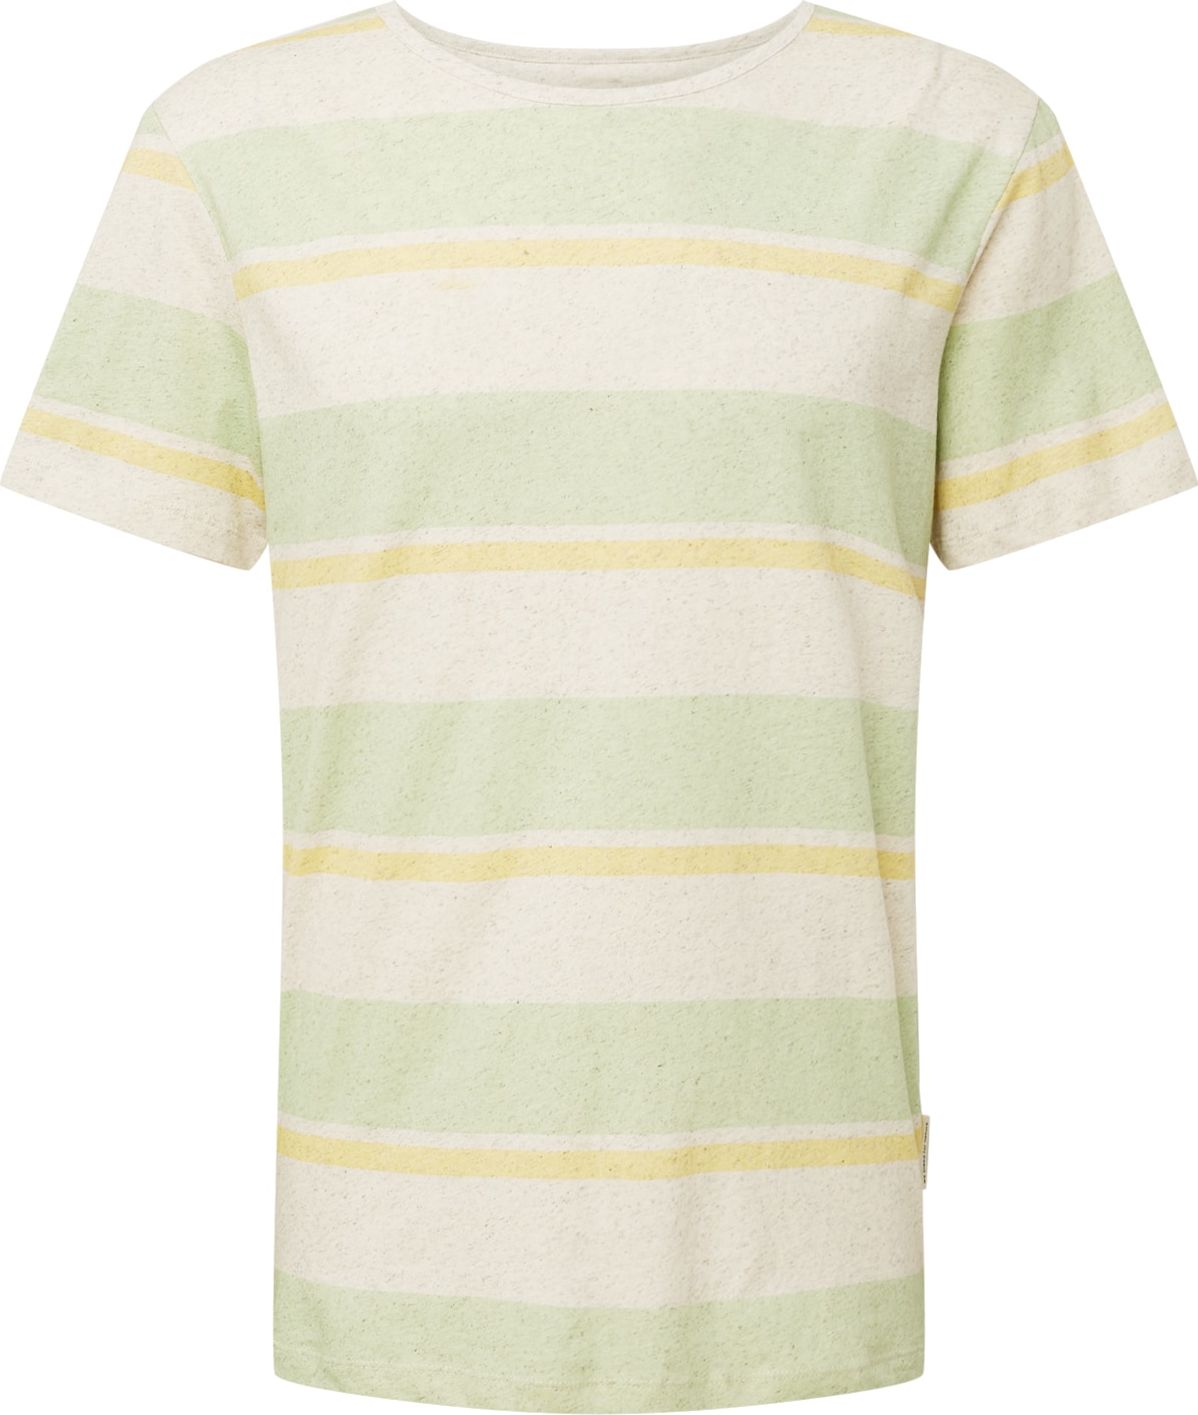 bleed clothing Tričko přírodní bílá / světle žlutá / pastelově zelená